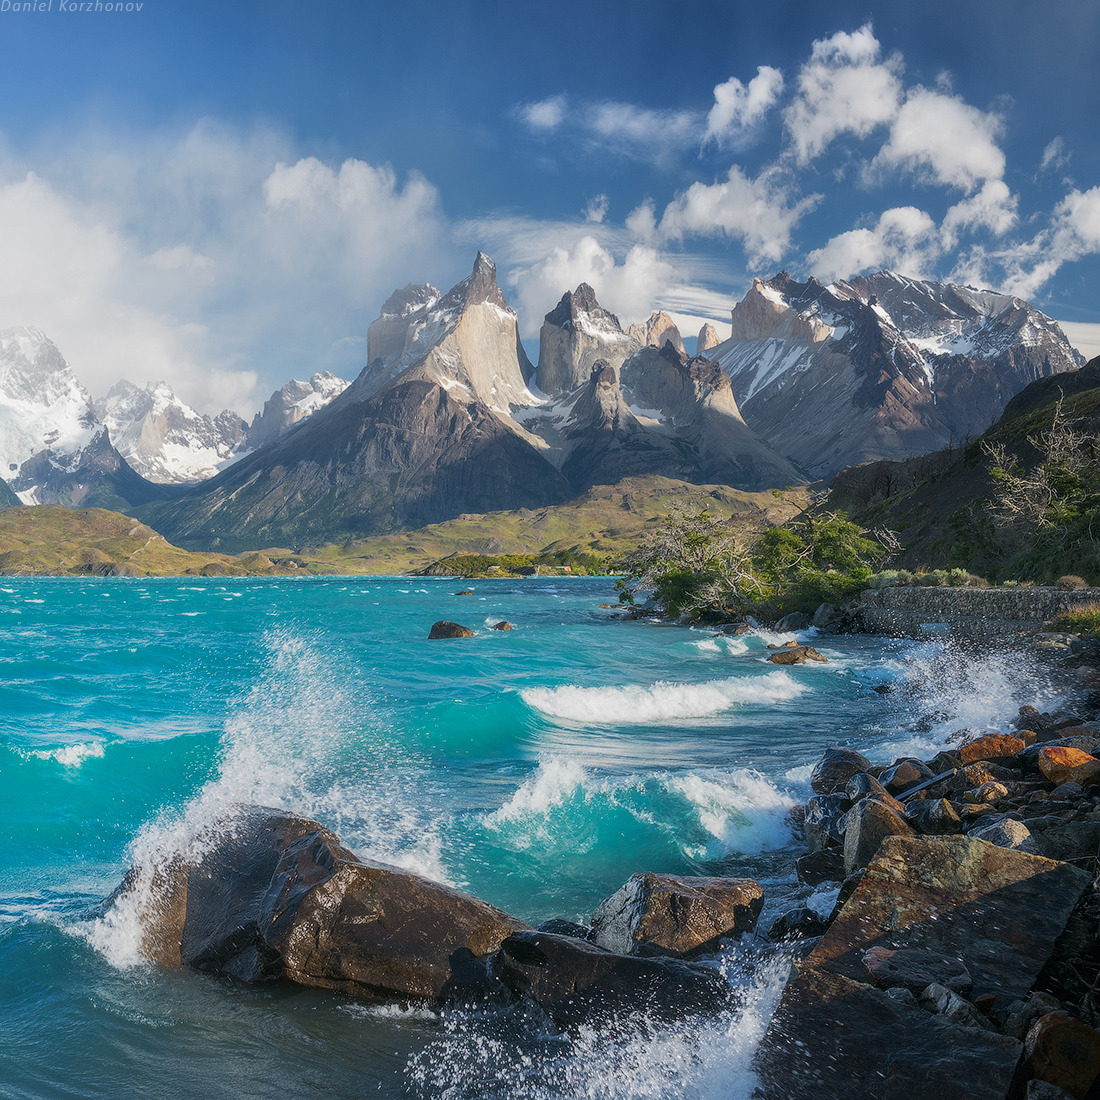 Torres del Paine / Patagonia